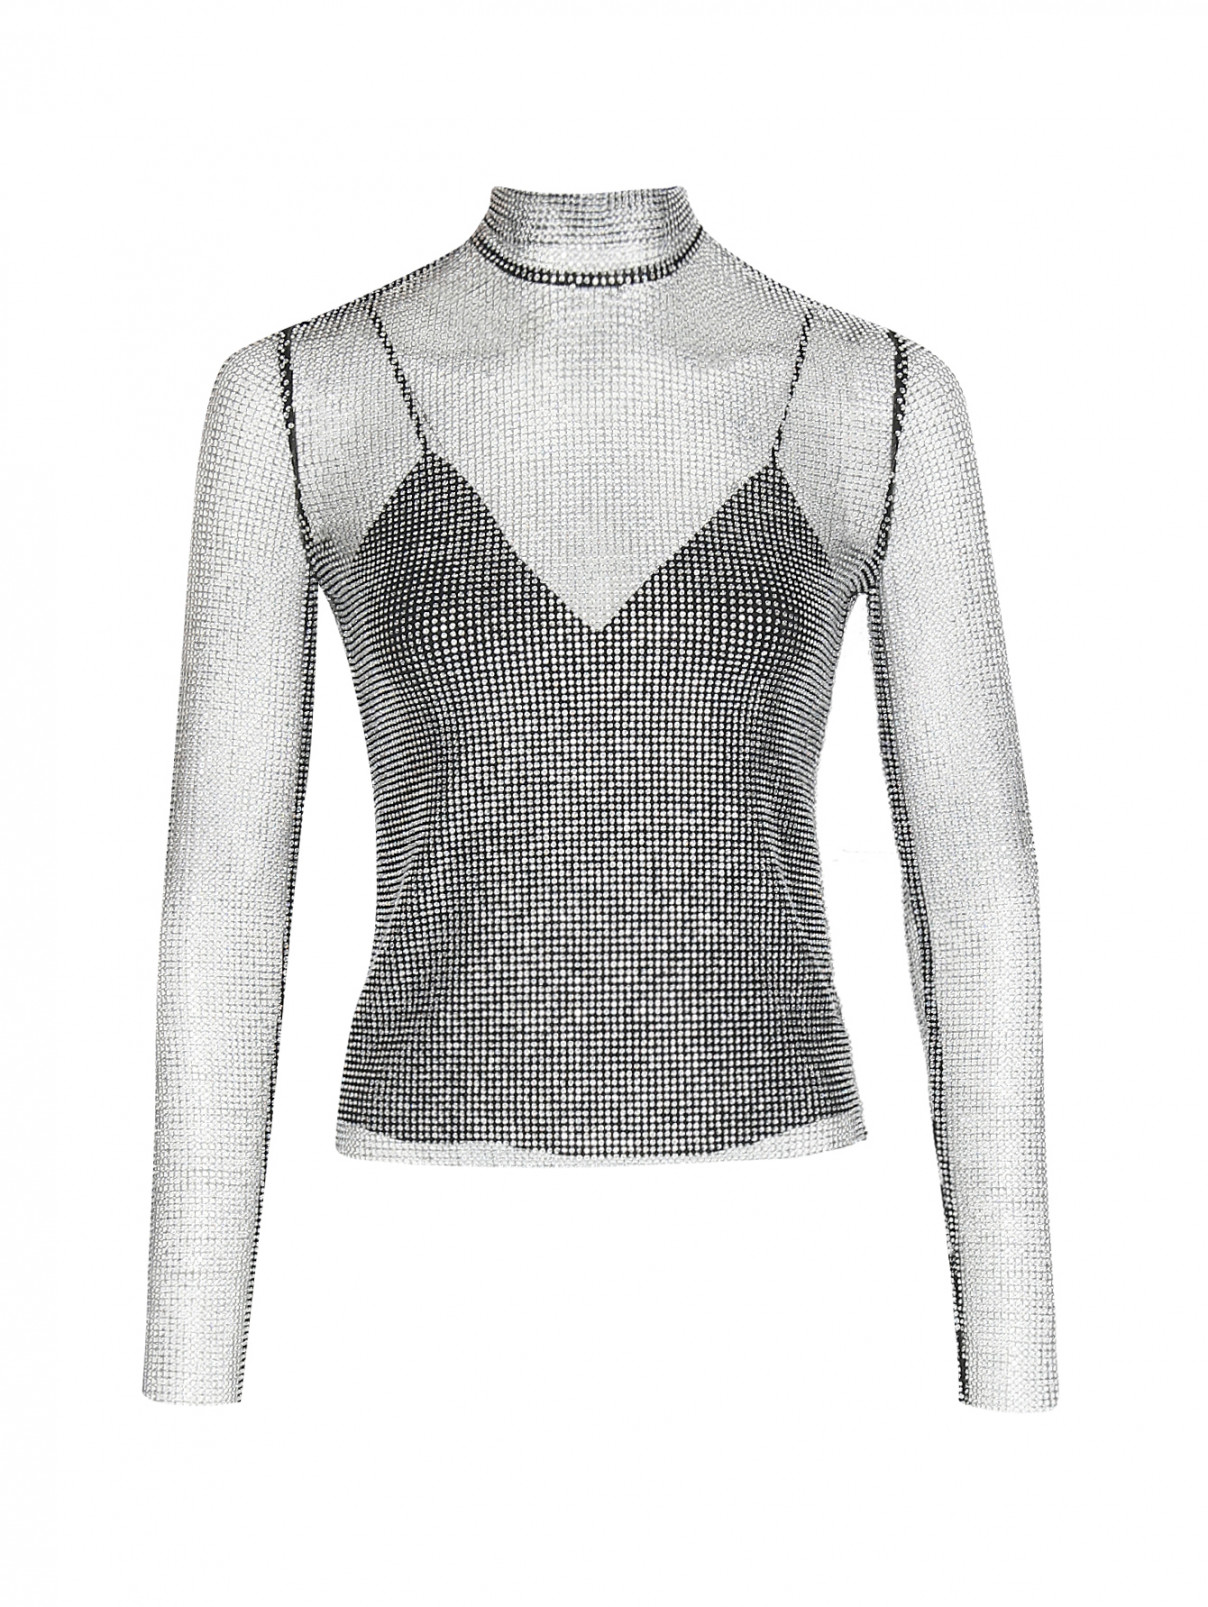 Блуза декорированная стразами Ermanno Scervino  –  Общий вид  – Цвет:  Черный